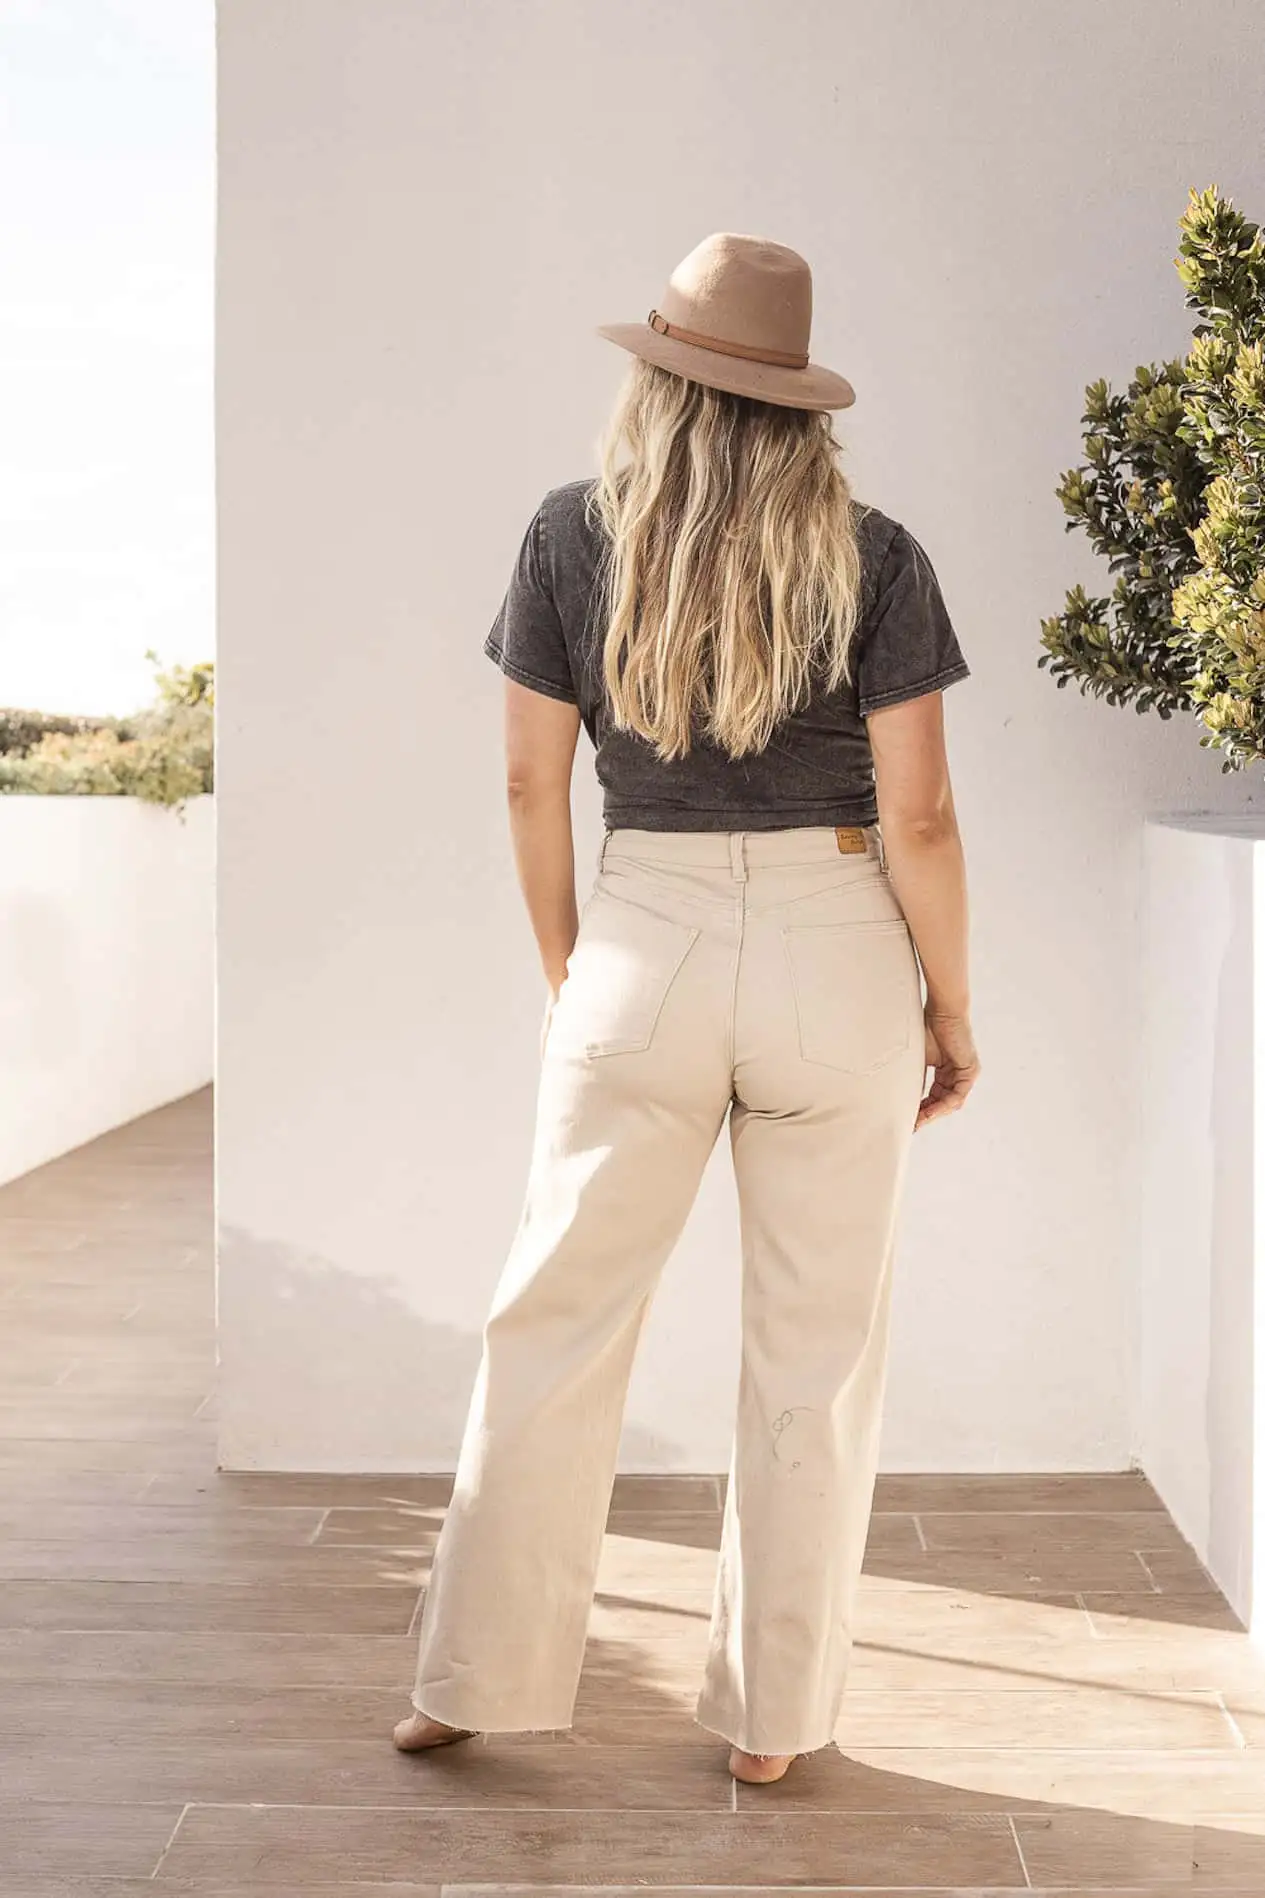 Best Jeans For Pear Shape: Flattering Styles for Curvy Women